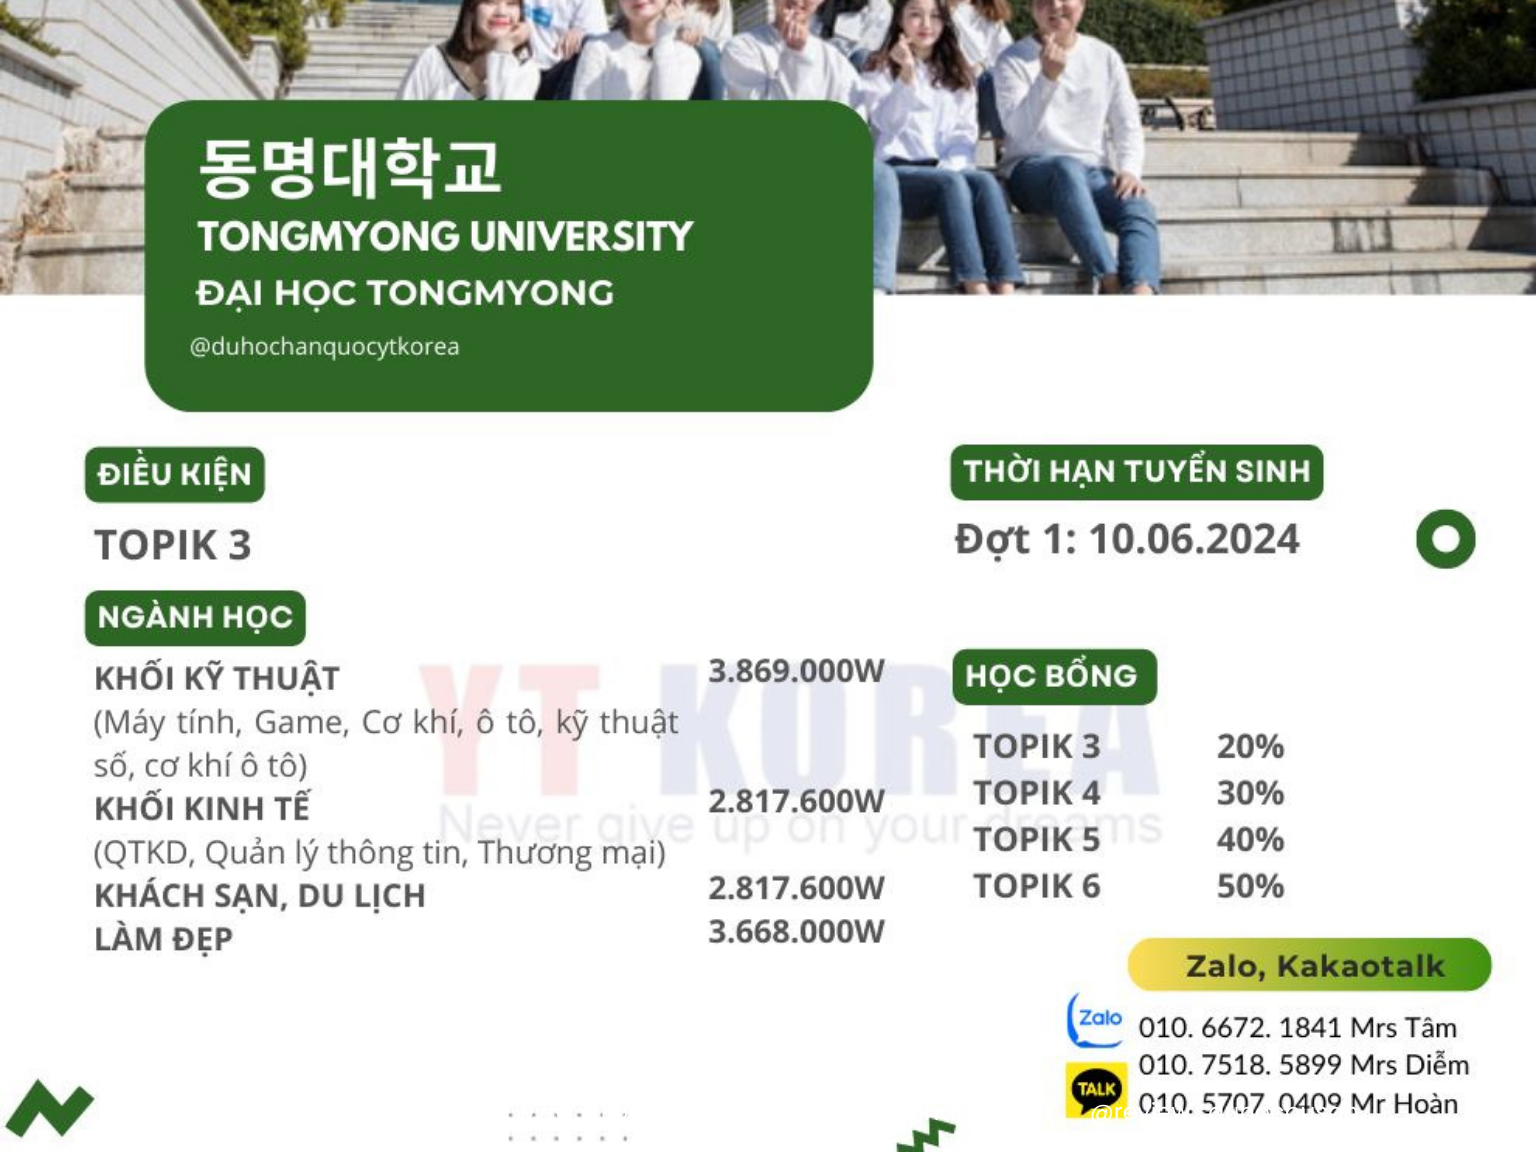 Đại học Tongmyong lên chuyên ngành D2